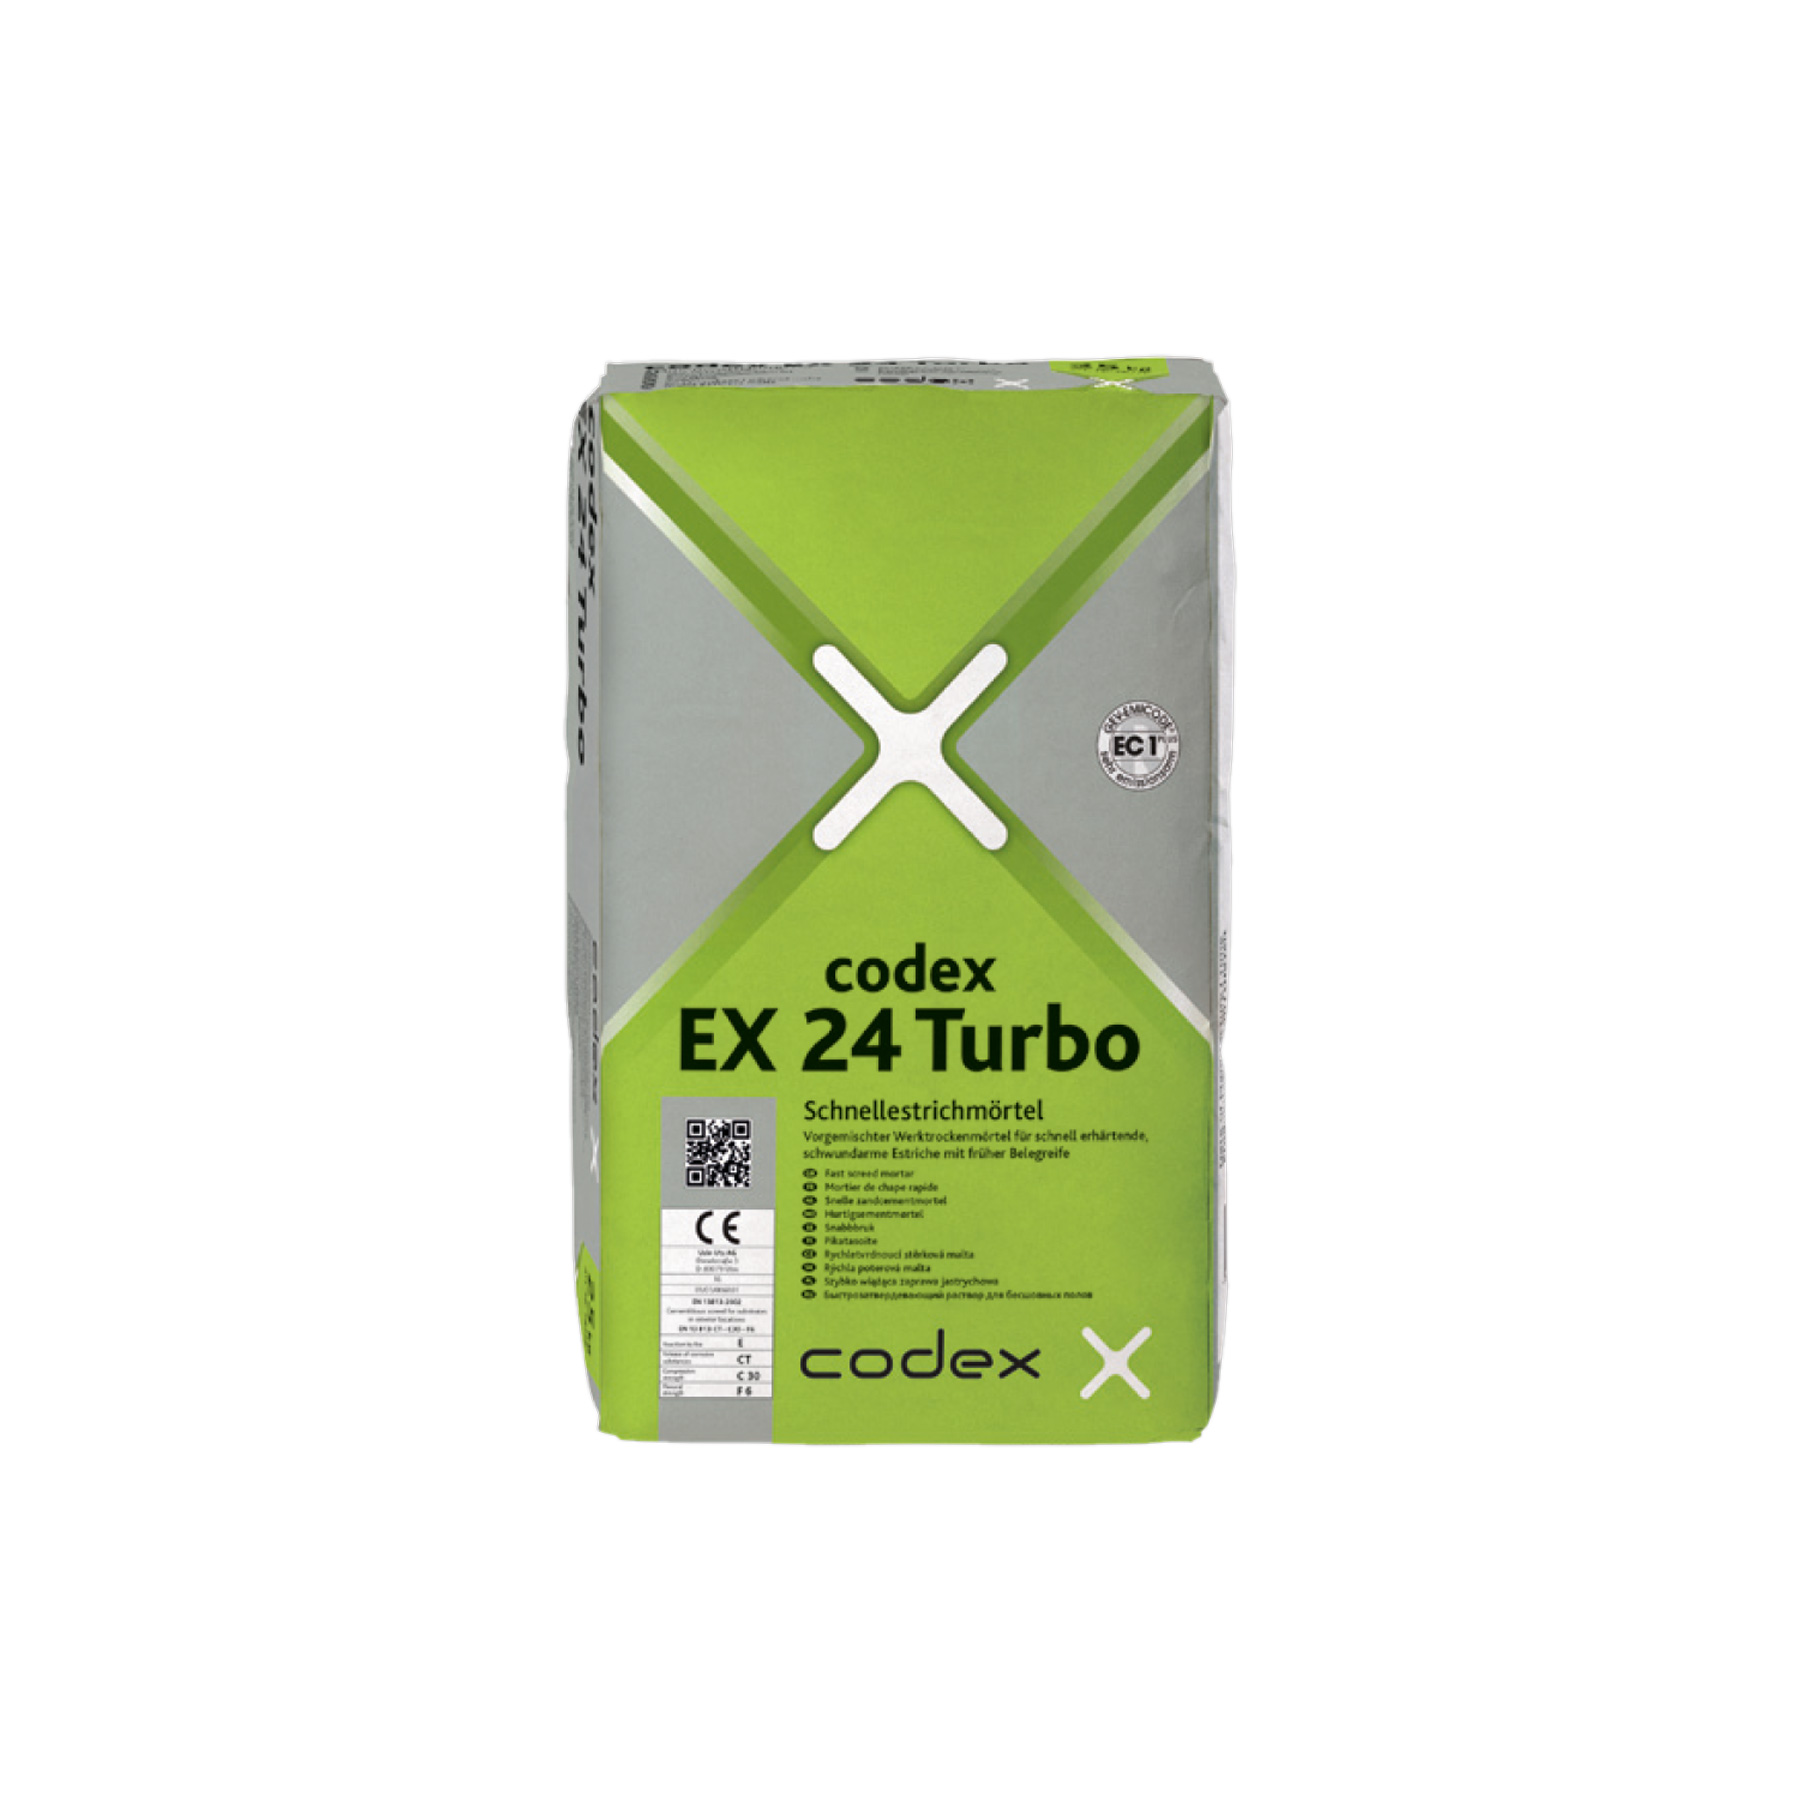 codex EX 24 Turbo Zement-Schnellestrichmörtel - 25kg 